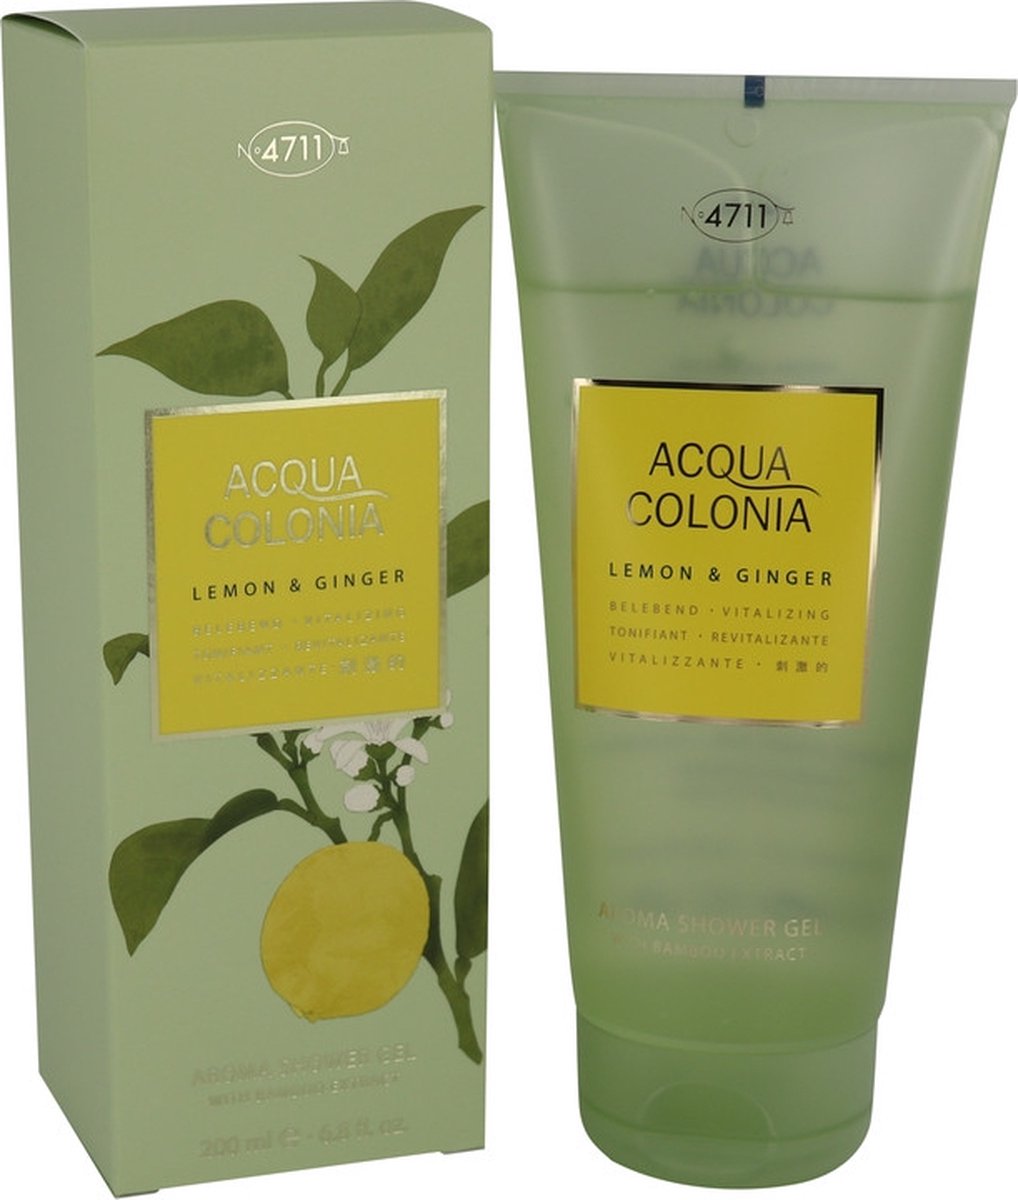 4711 ACQUA COLONIA Lemon & Ginger by 4711 200 ml - Shower Gel